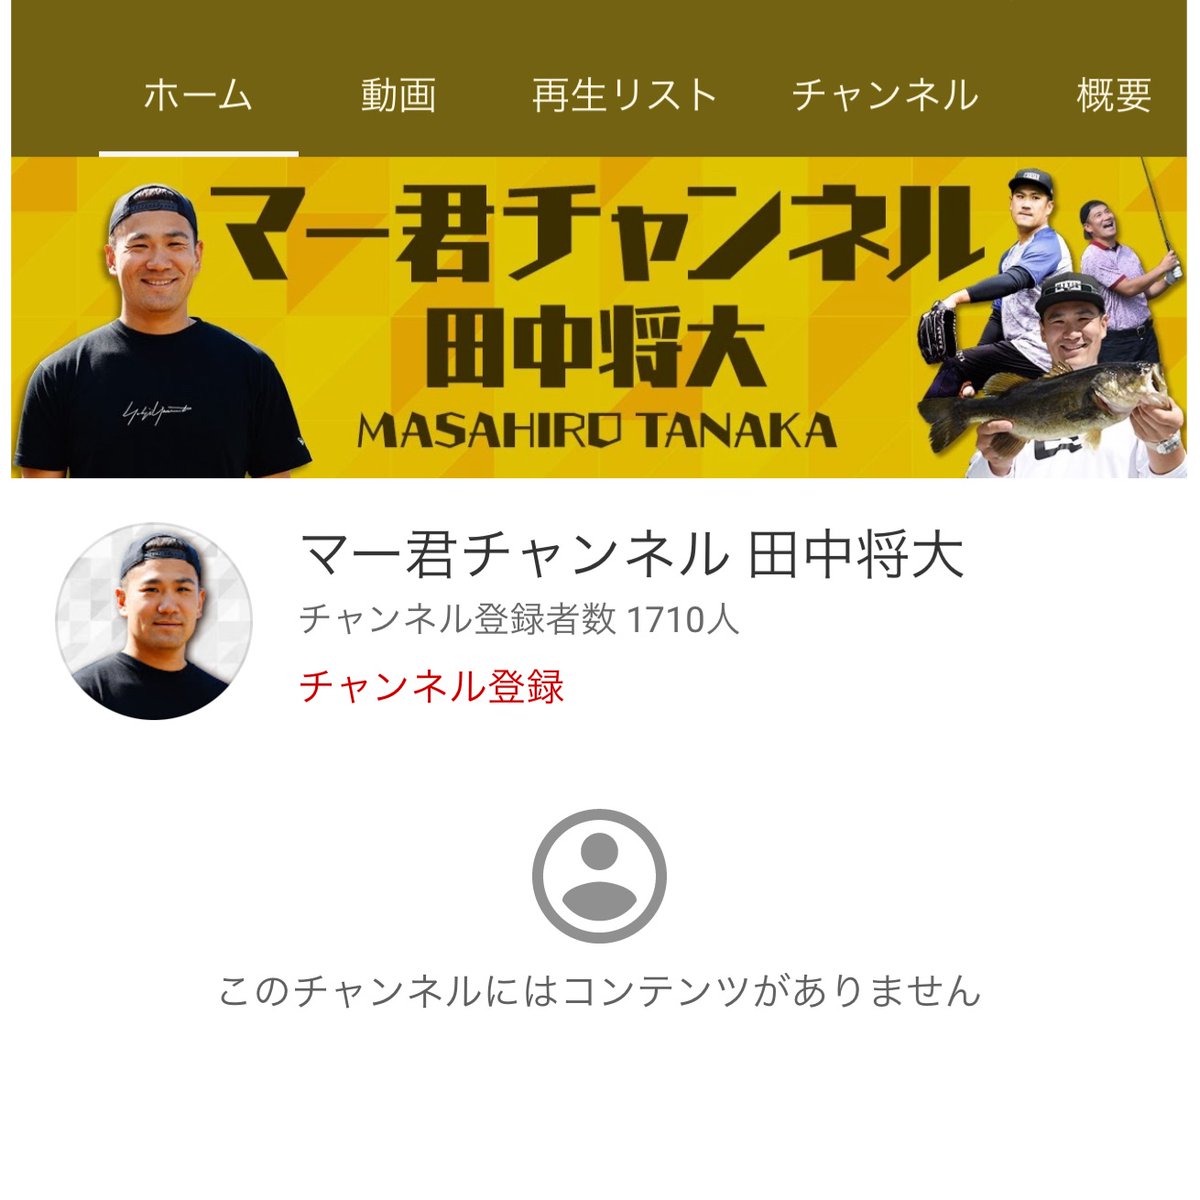 田中将大 Masahiro Tanaka T Masahiro18 Twitter